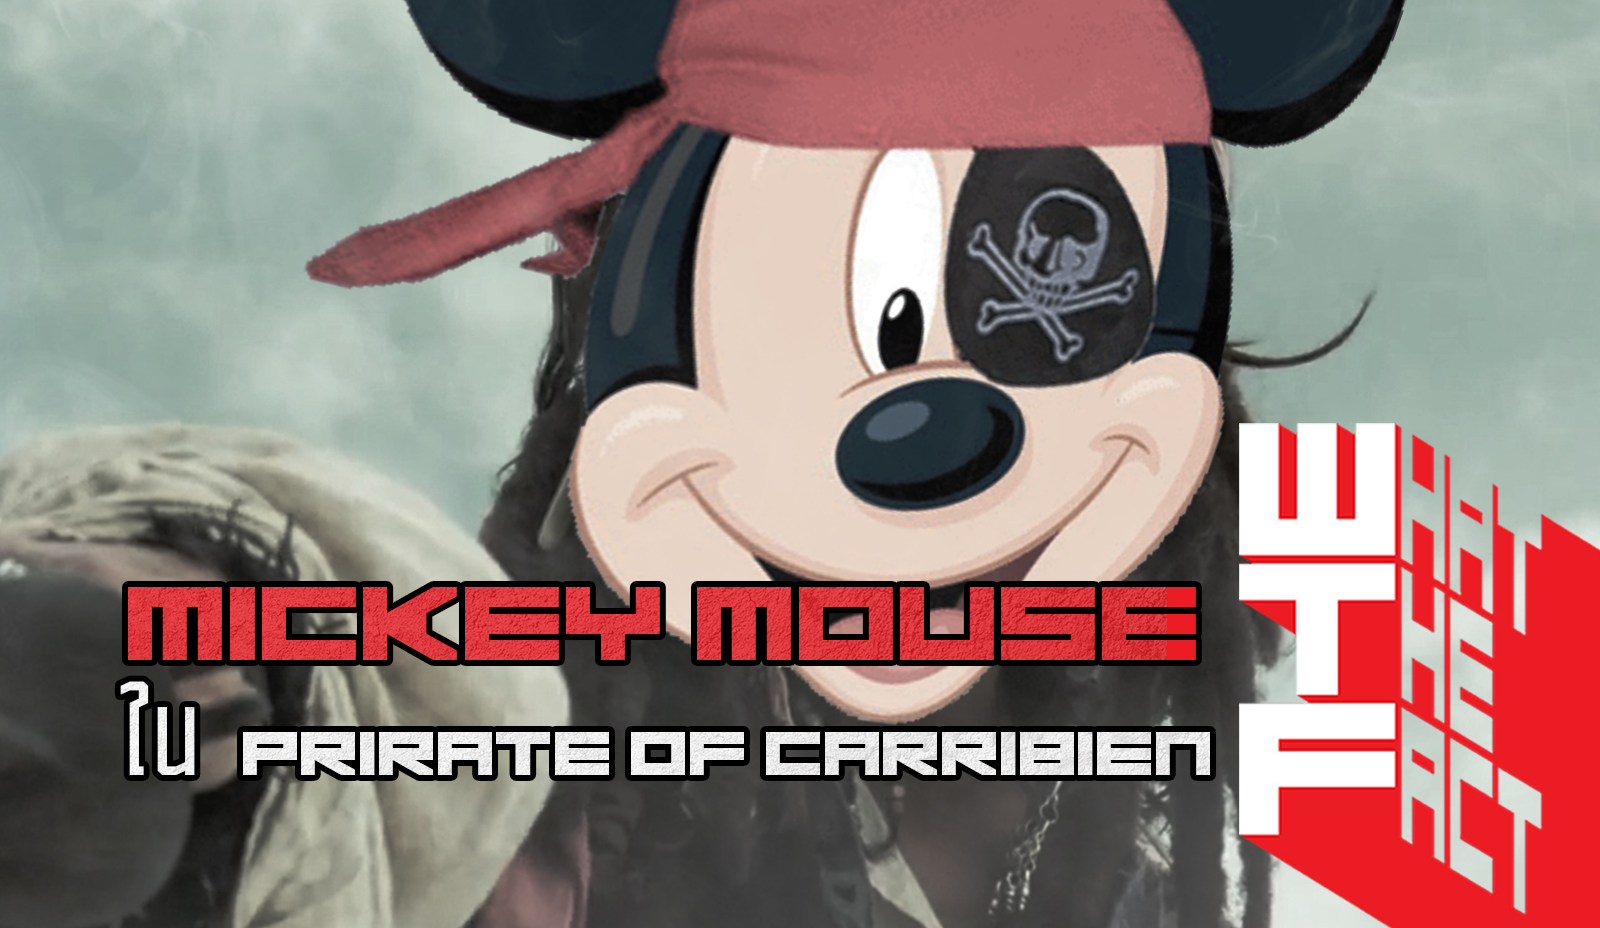 คุณเคยรู้มั้ยว่า Pirates of The Caribbean มี Micky Mouse ซ่อนอยู่ด้วย !!